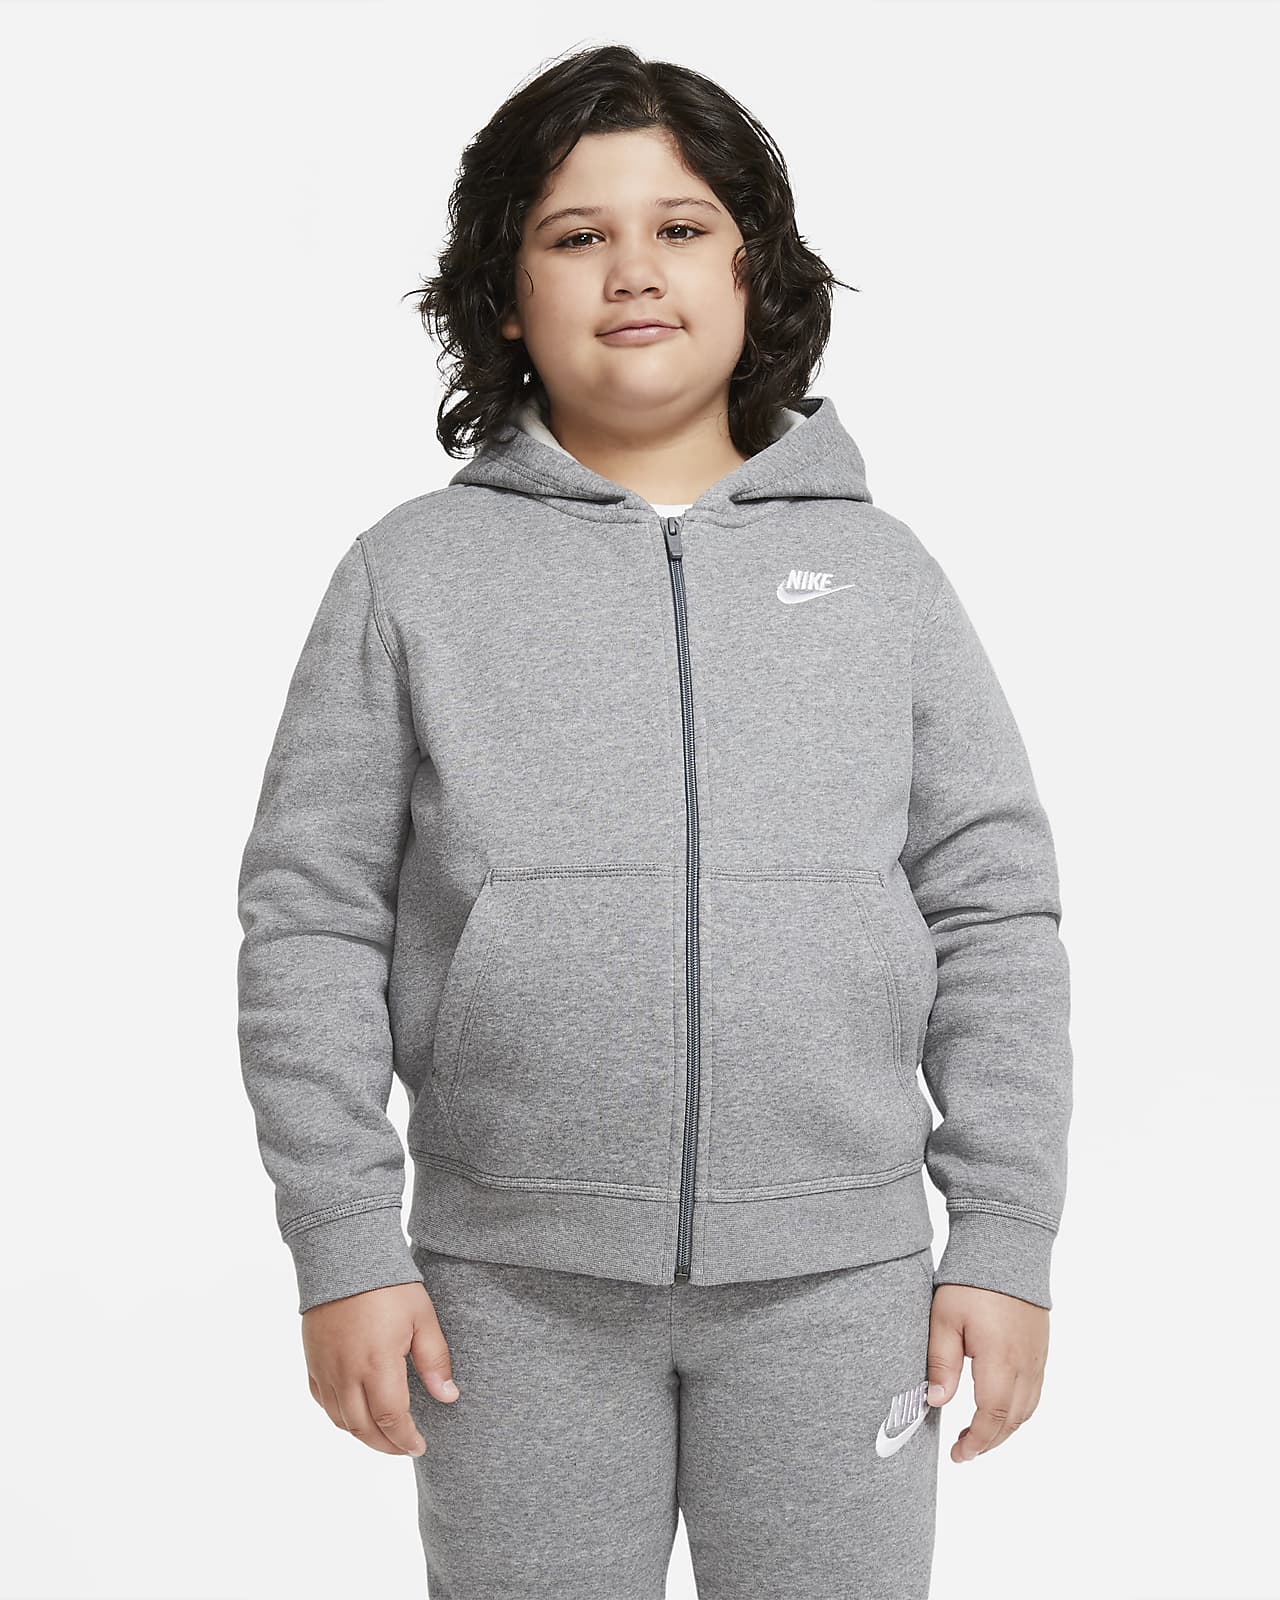 Bluza z kapturem i zamkiem na całej długości dla dużych dzieci (chłopców) Nike Sportswear Club Fleece (szersze rozmiary)